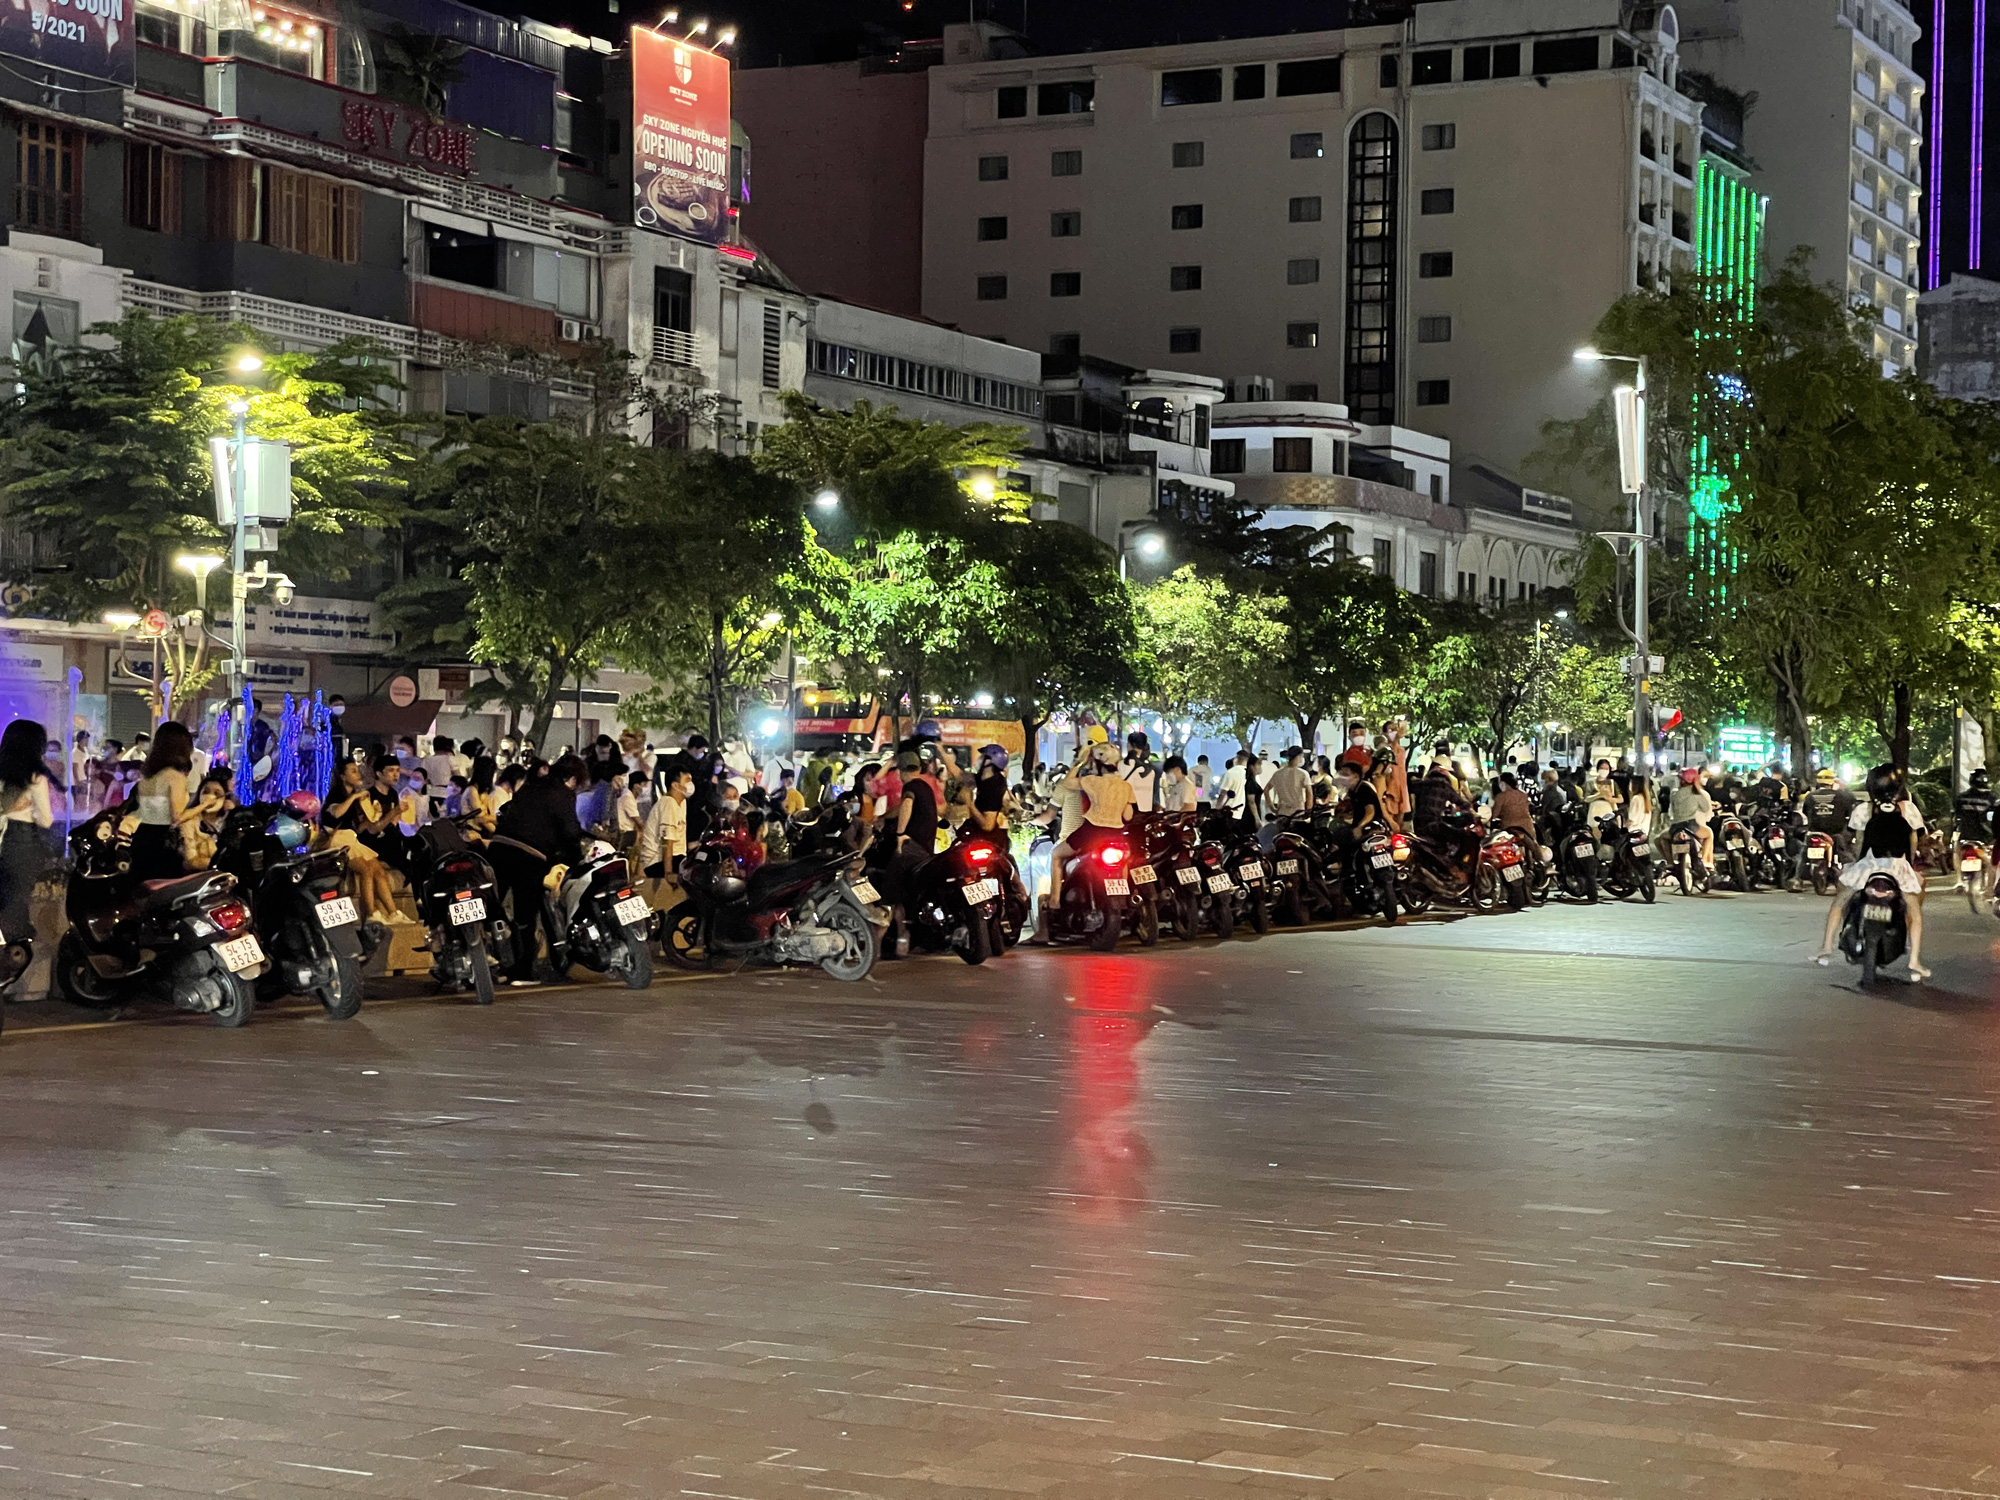 Phố đi bộ Nguyễn Huệ đang chào đón bạn bằng những lễ hội đầy màu sắc và nghệ thuật độc đáo. Hãy tận hưởng không khí náo nhiệt, cùng bạn bè và gia đình tham gia các trò chơi vui nhộn, giải trí cực kỳ thú vị.